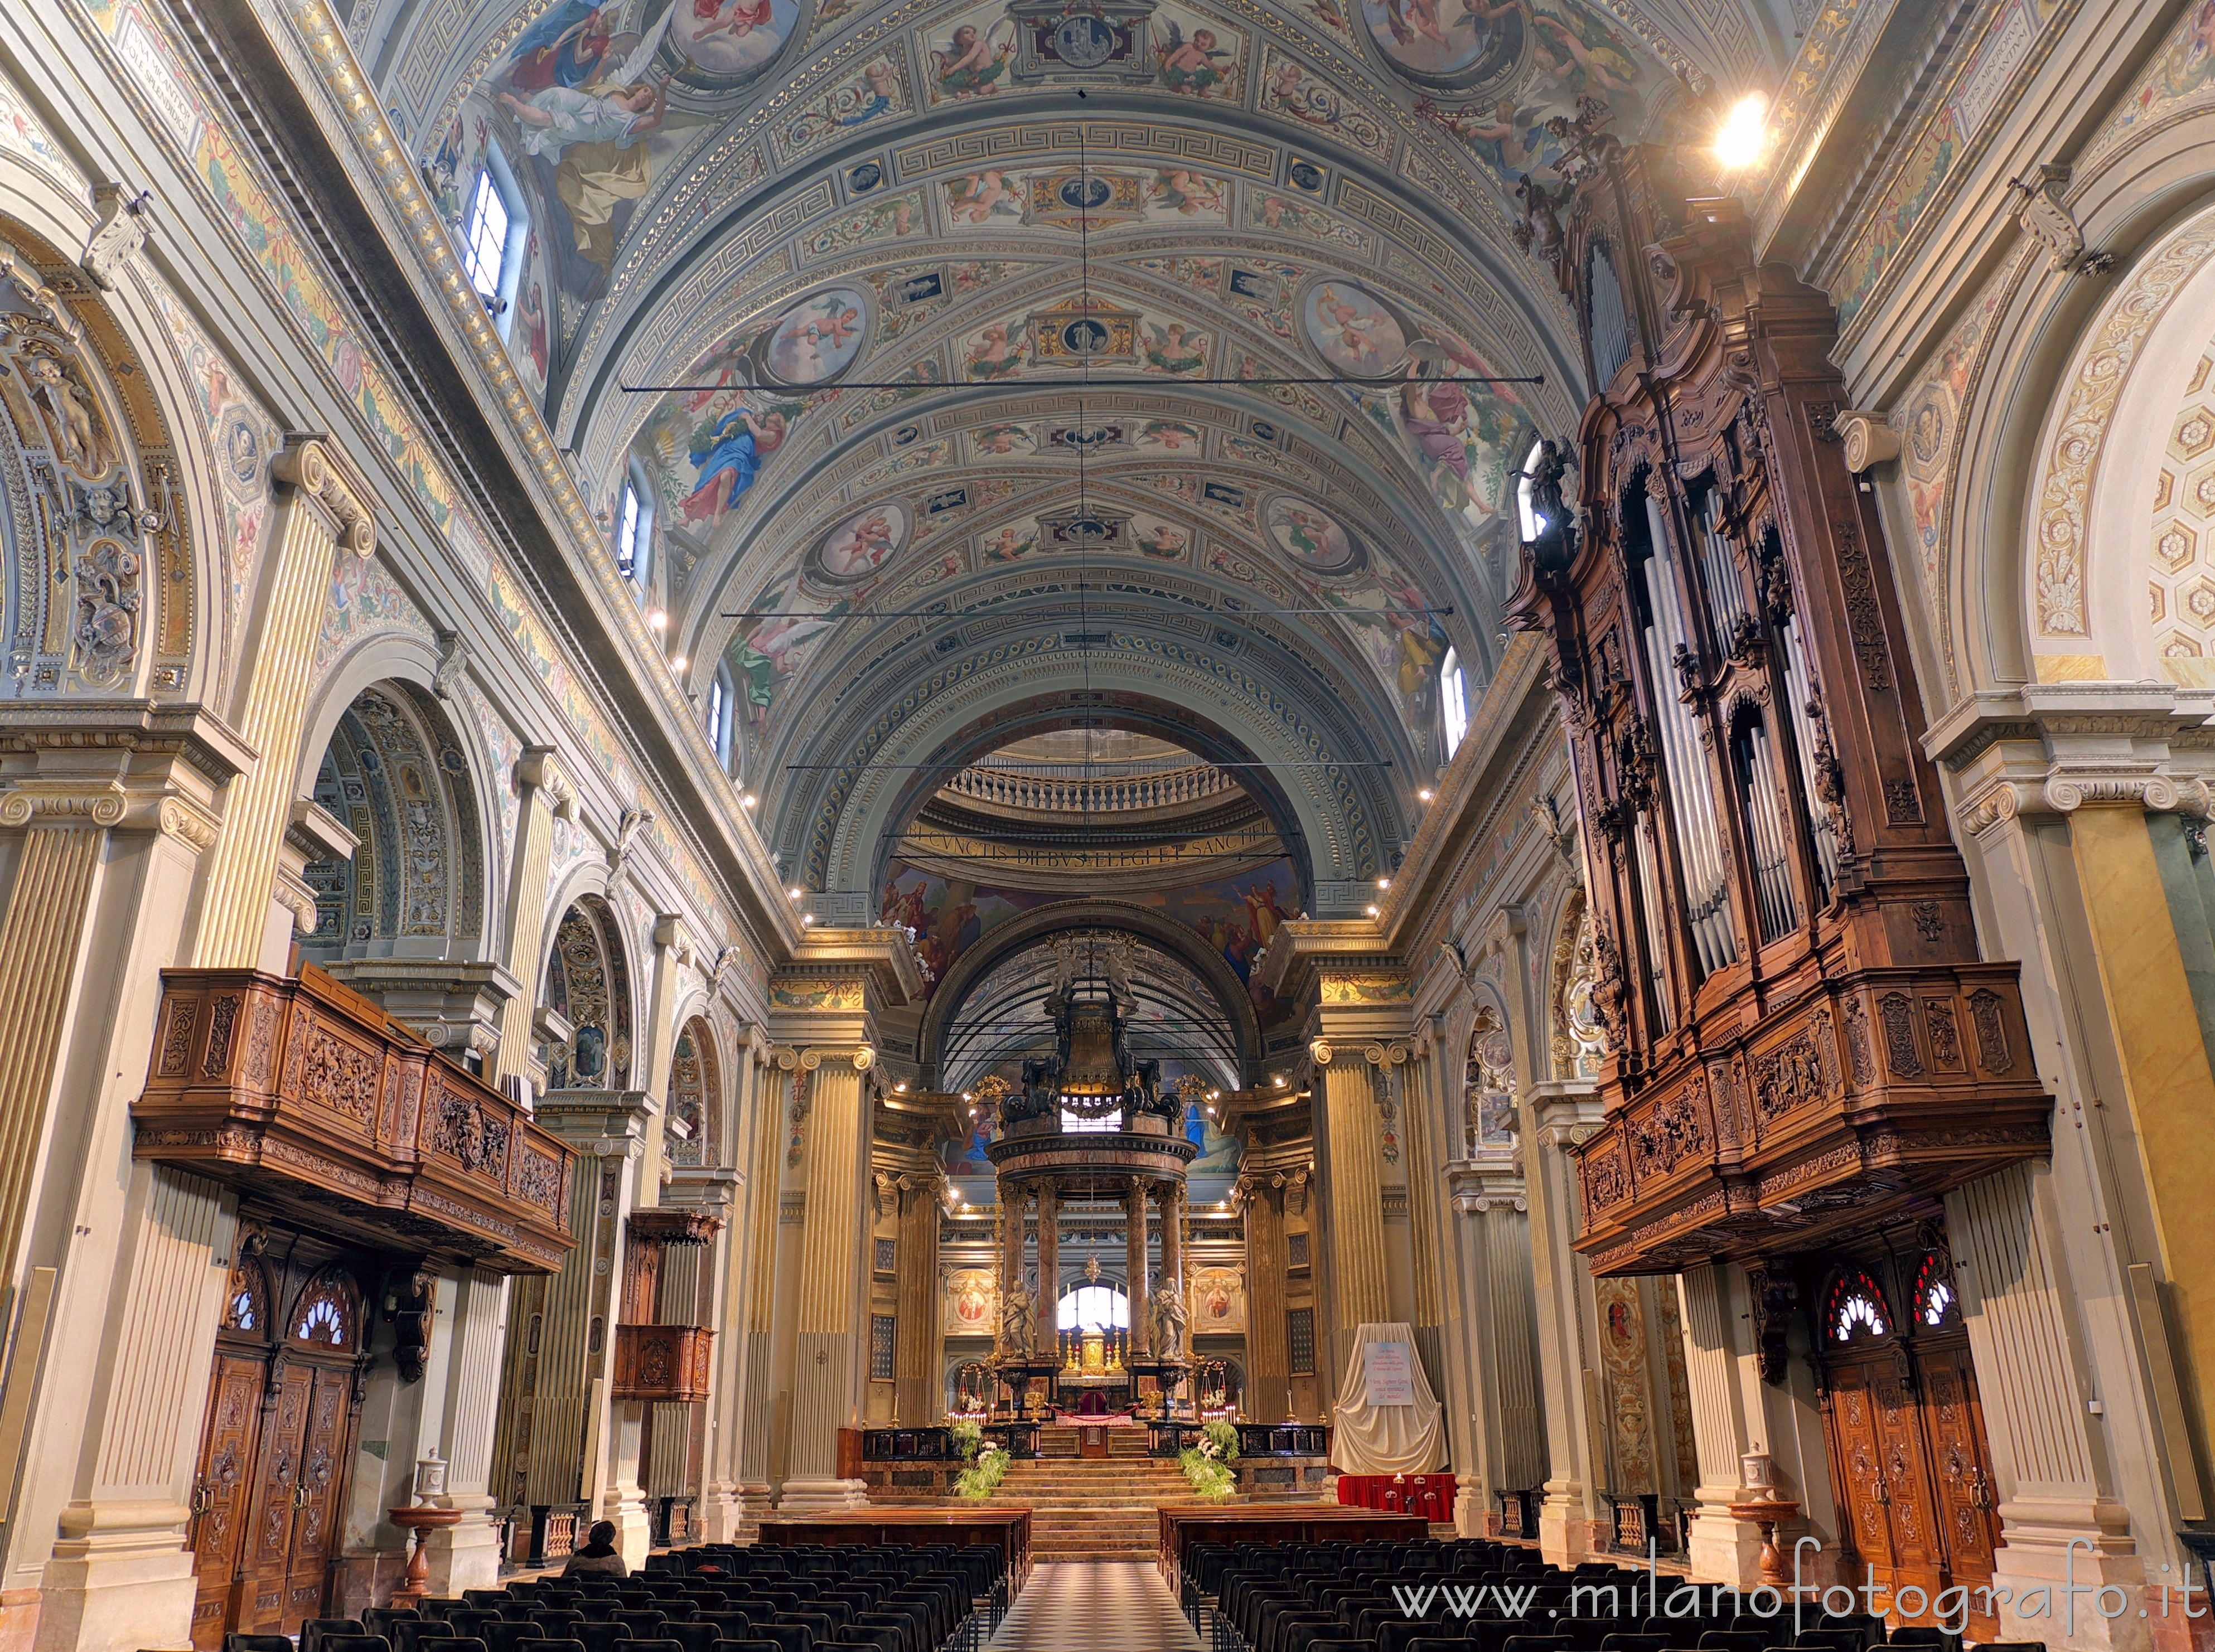 Caravaggio (Bergamo, Italy): Interior of the church of the Sanctuary of Caravaggio - Caravaggio (Bergamo, Italy)